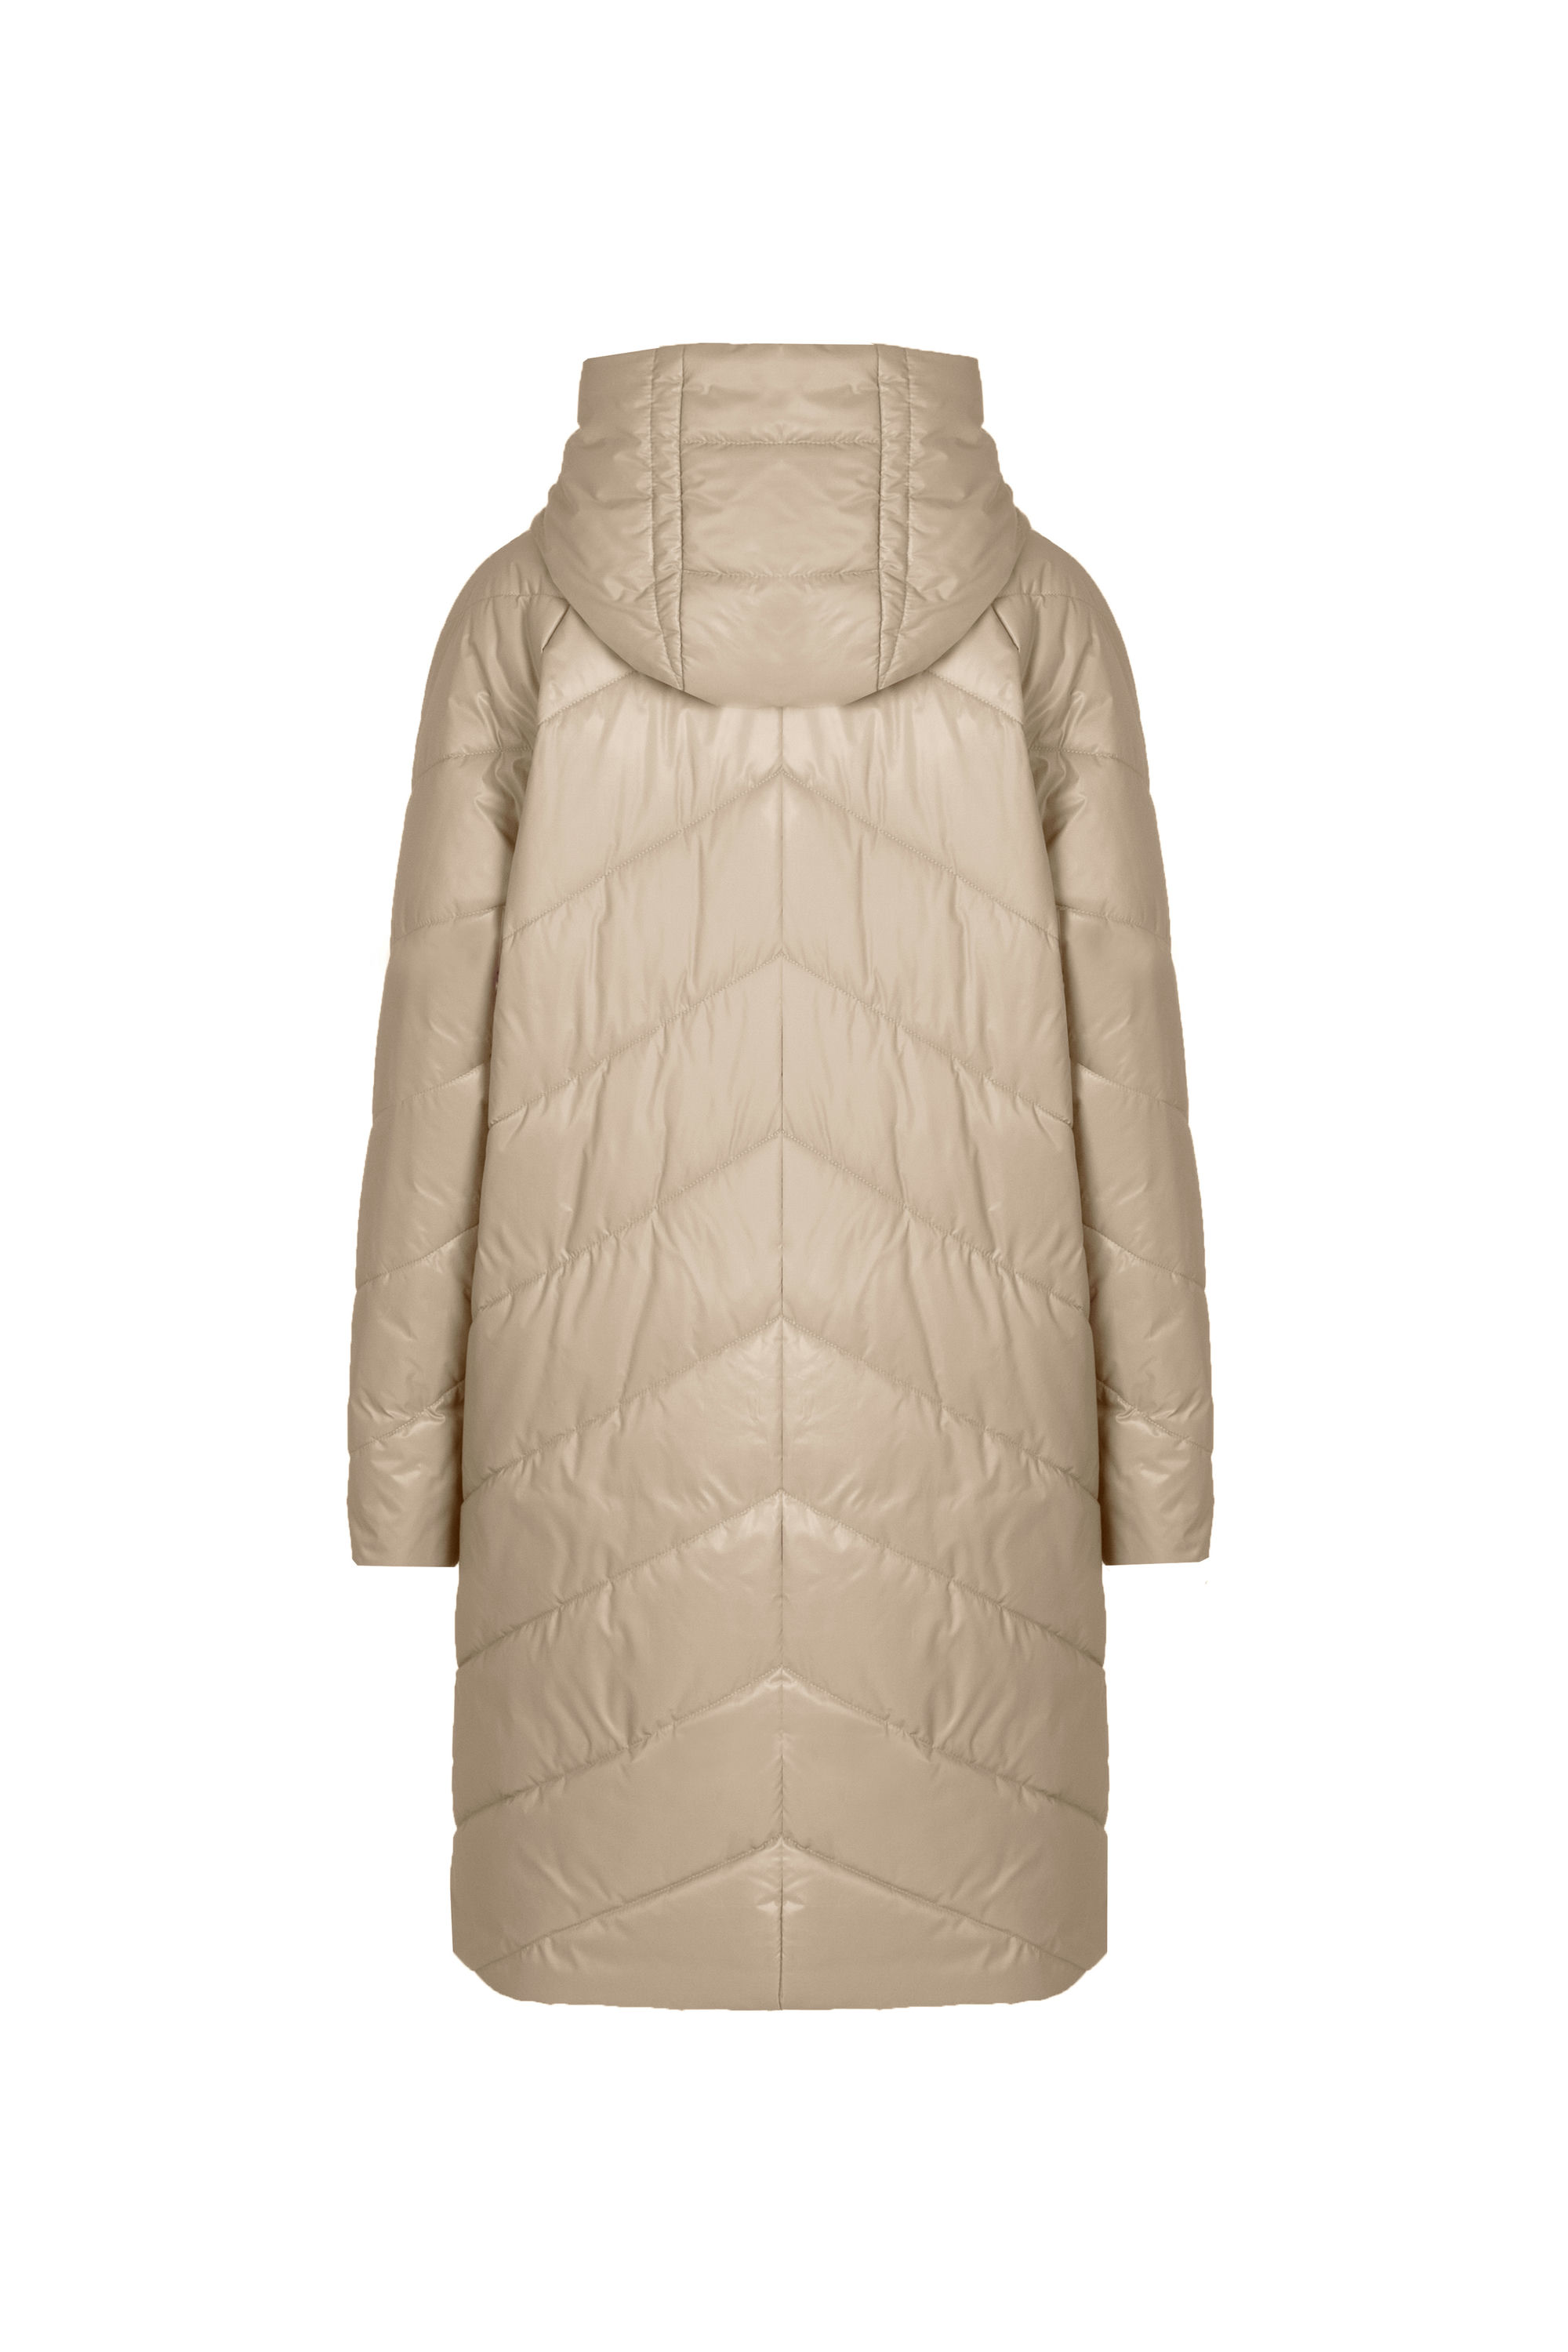 Пальто женское плащевое утепленное 5-12649-1. Фото 3.